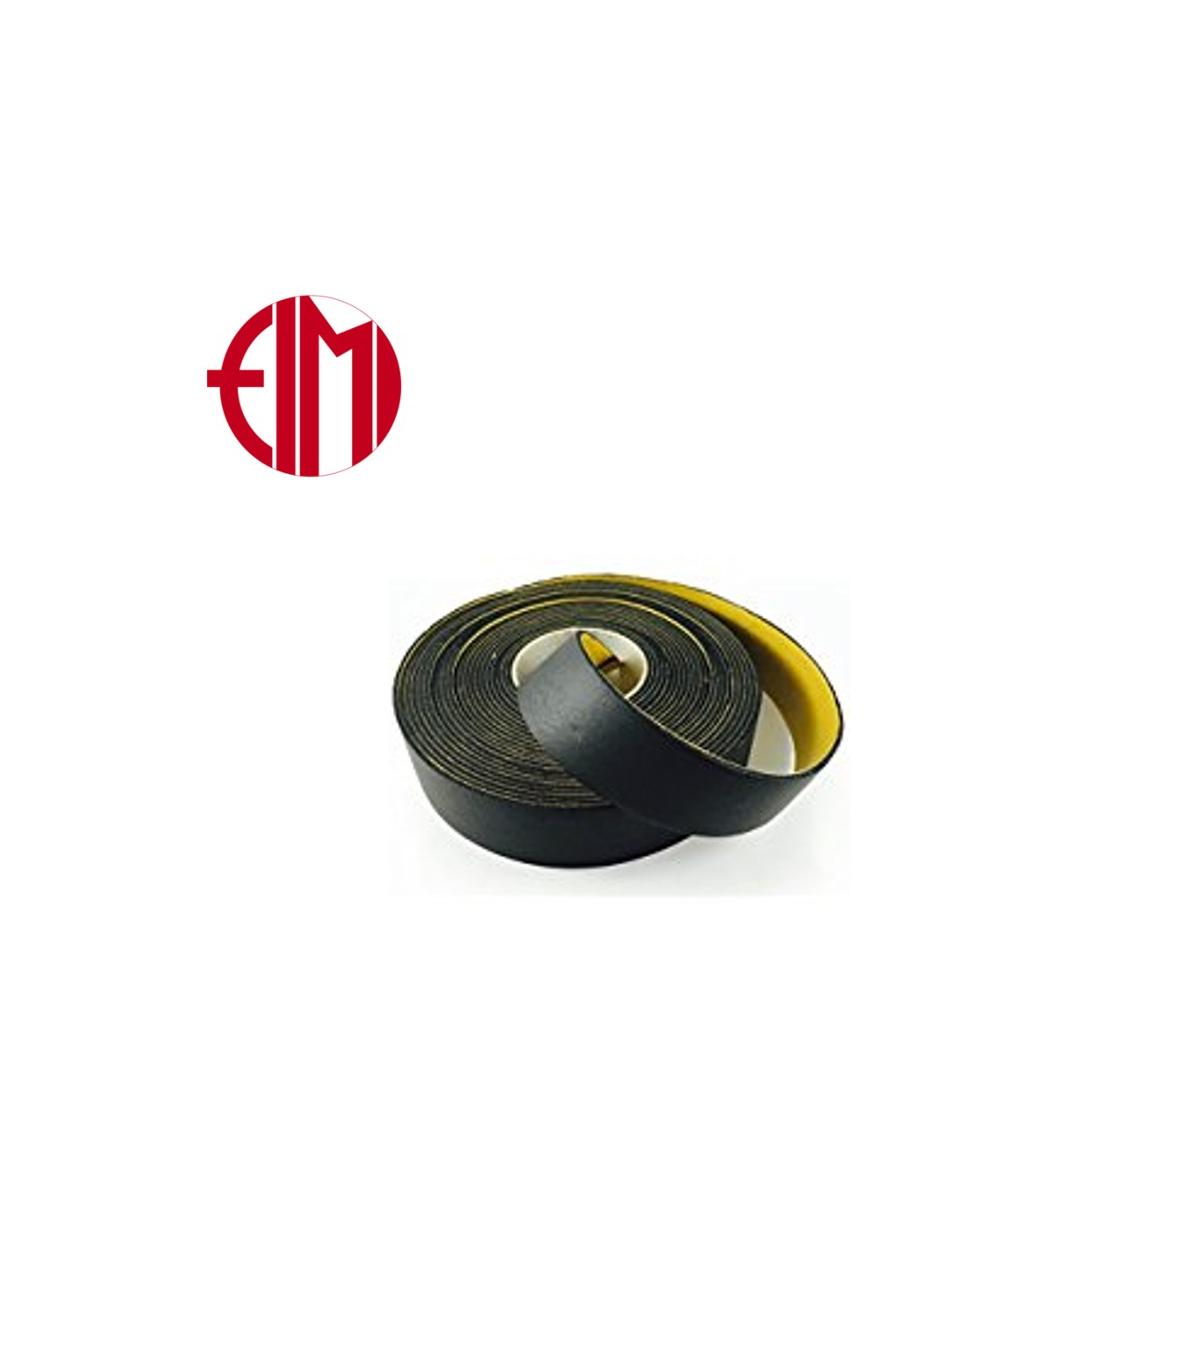 Fimi 04701 ISOLINE fascia gomma adesiva, 5 cm per 10 metri